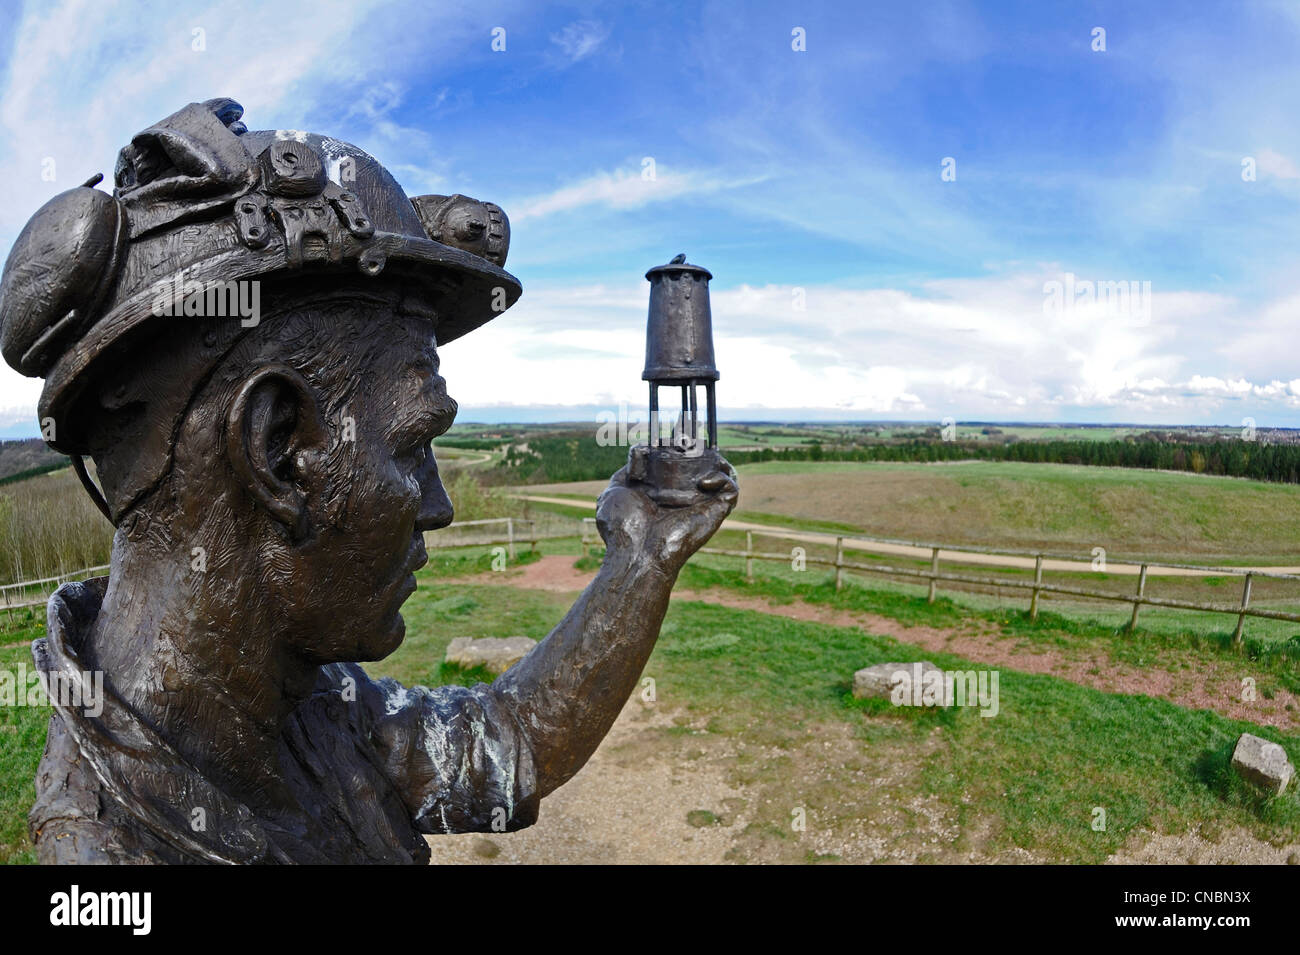 Statue commémorative de bronze d'un mineur de charbon brandissant une lampe de sûreté Davy dans l'honneur à toutes les mines de charbon, dans le Nottinghamshire. Banque D'Images